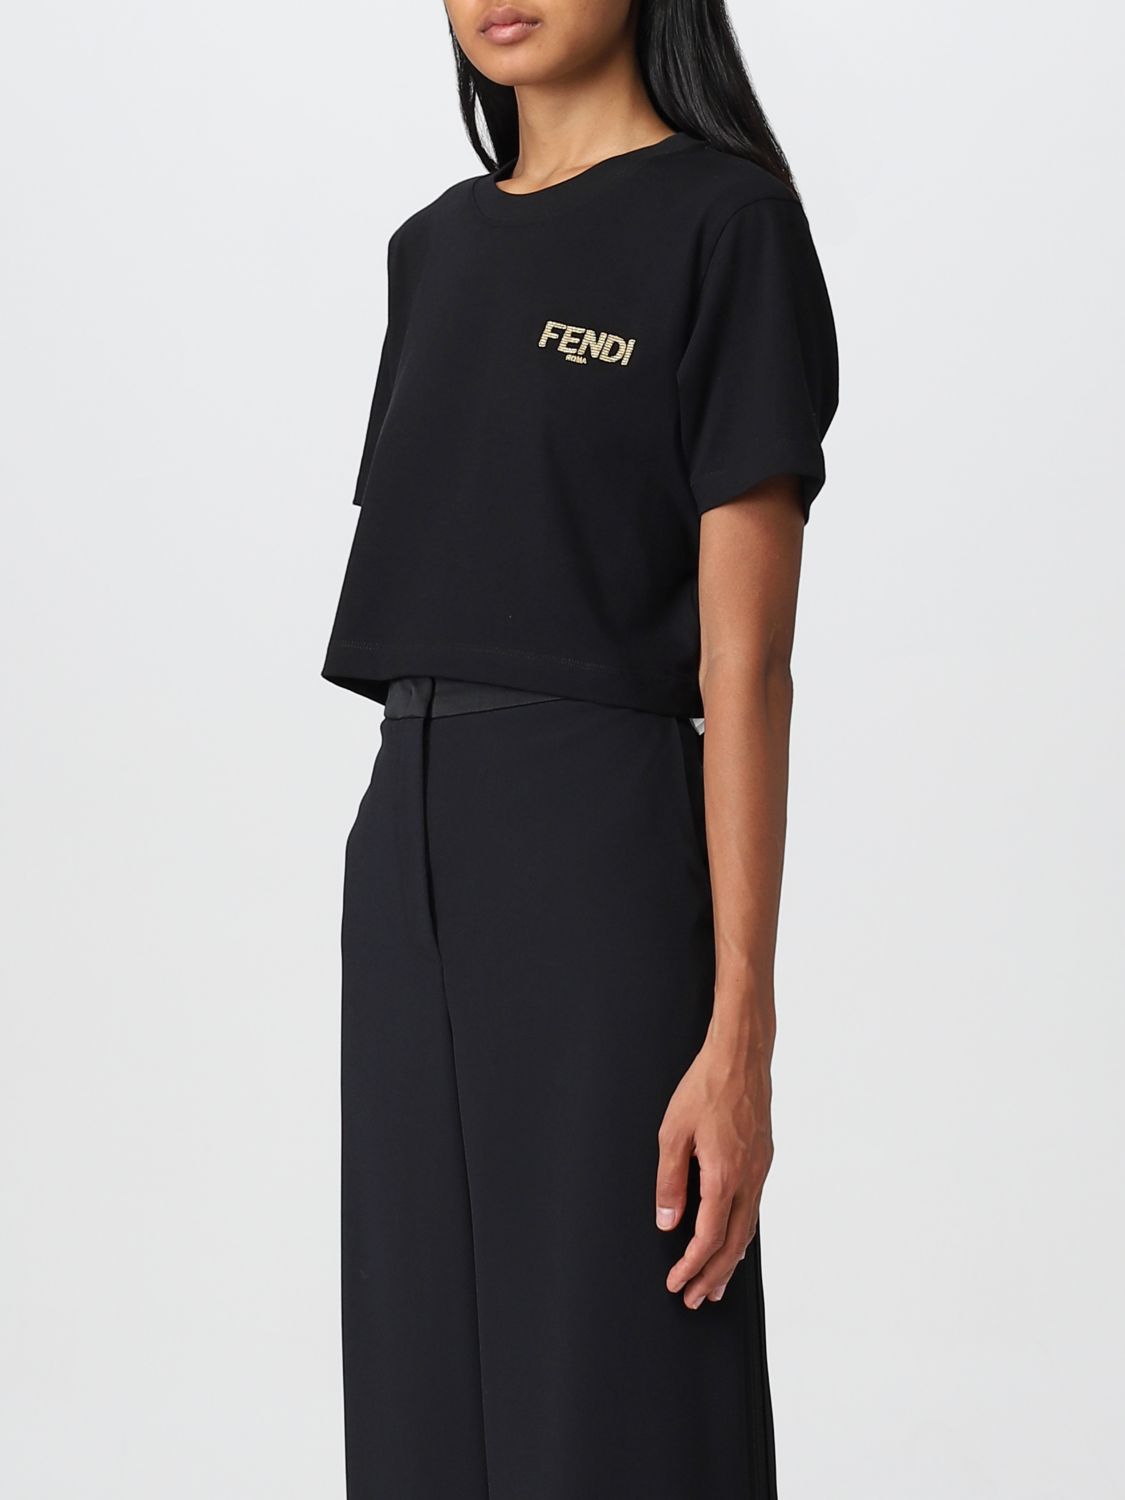 T-Shirt Fendi: Fendi t-shirt for woman black 3